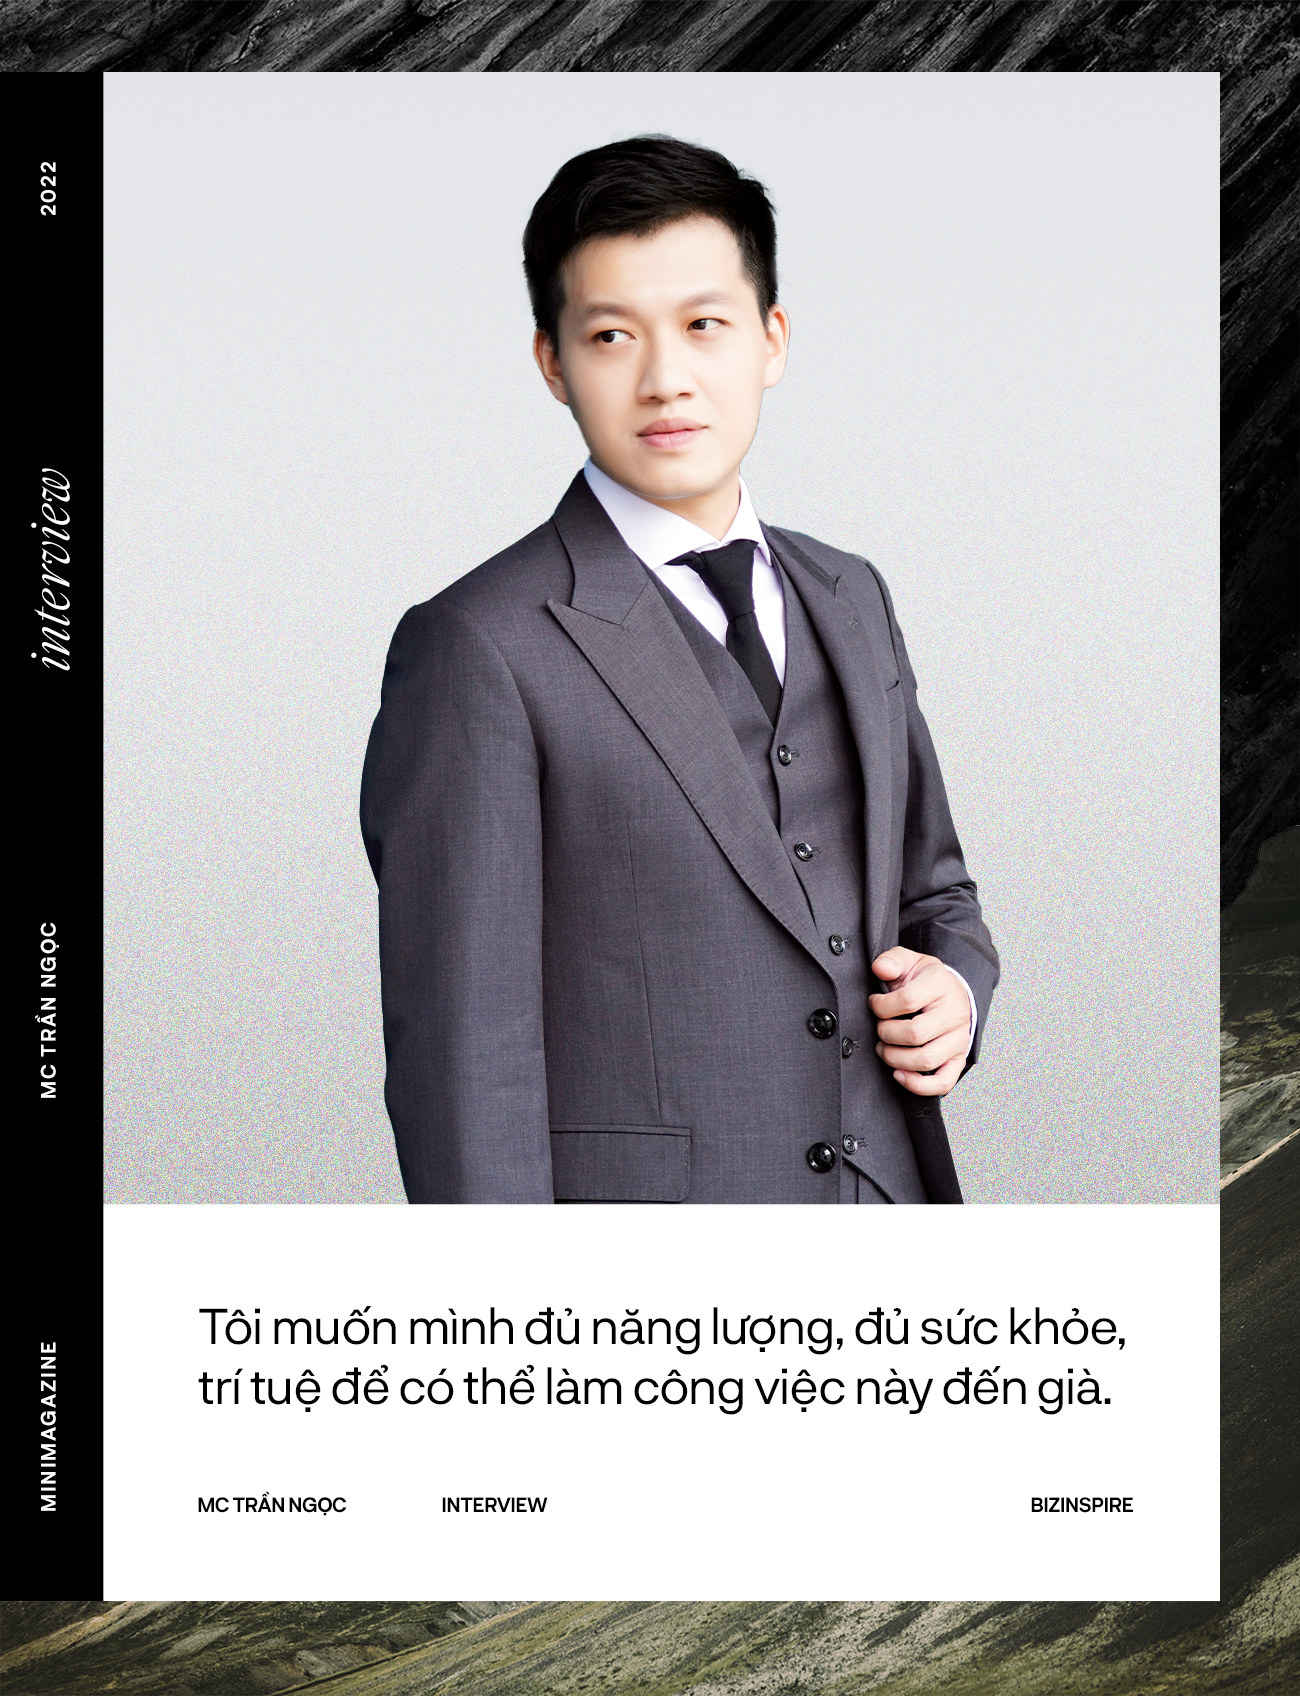 MC Trần Ngọc - MC ‘mát tay’ nhất VTV: ‘Tôi không phải là người có tuổi trẻ giỏi giang kiểu mẫu, từng học lại, thi lại, tốt nghiệp trung bình!’ - Ảnh 3.